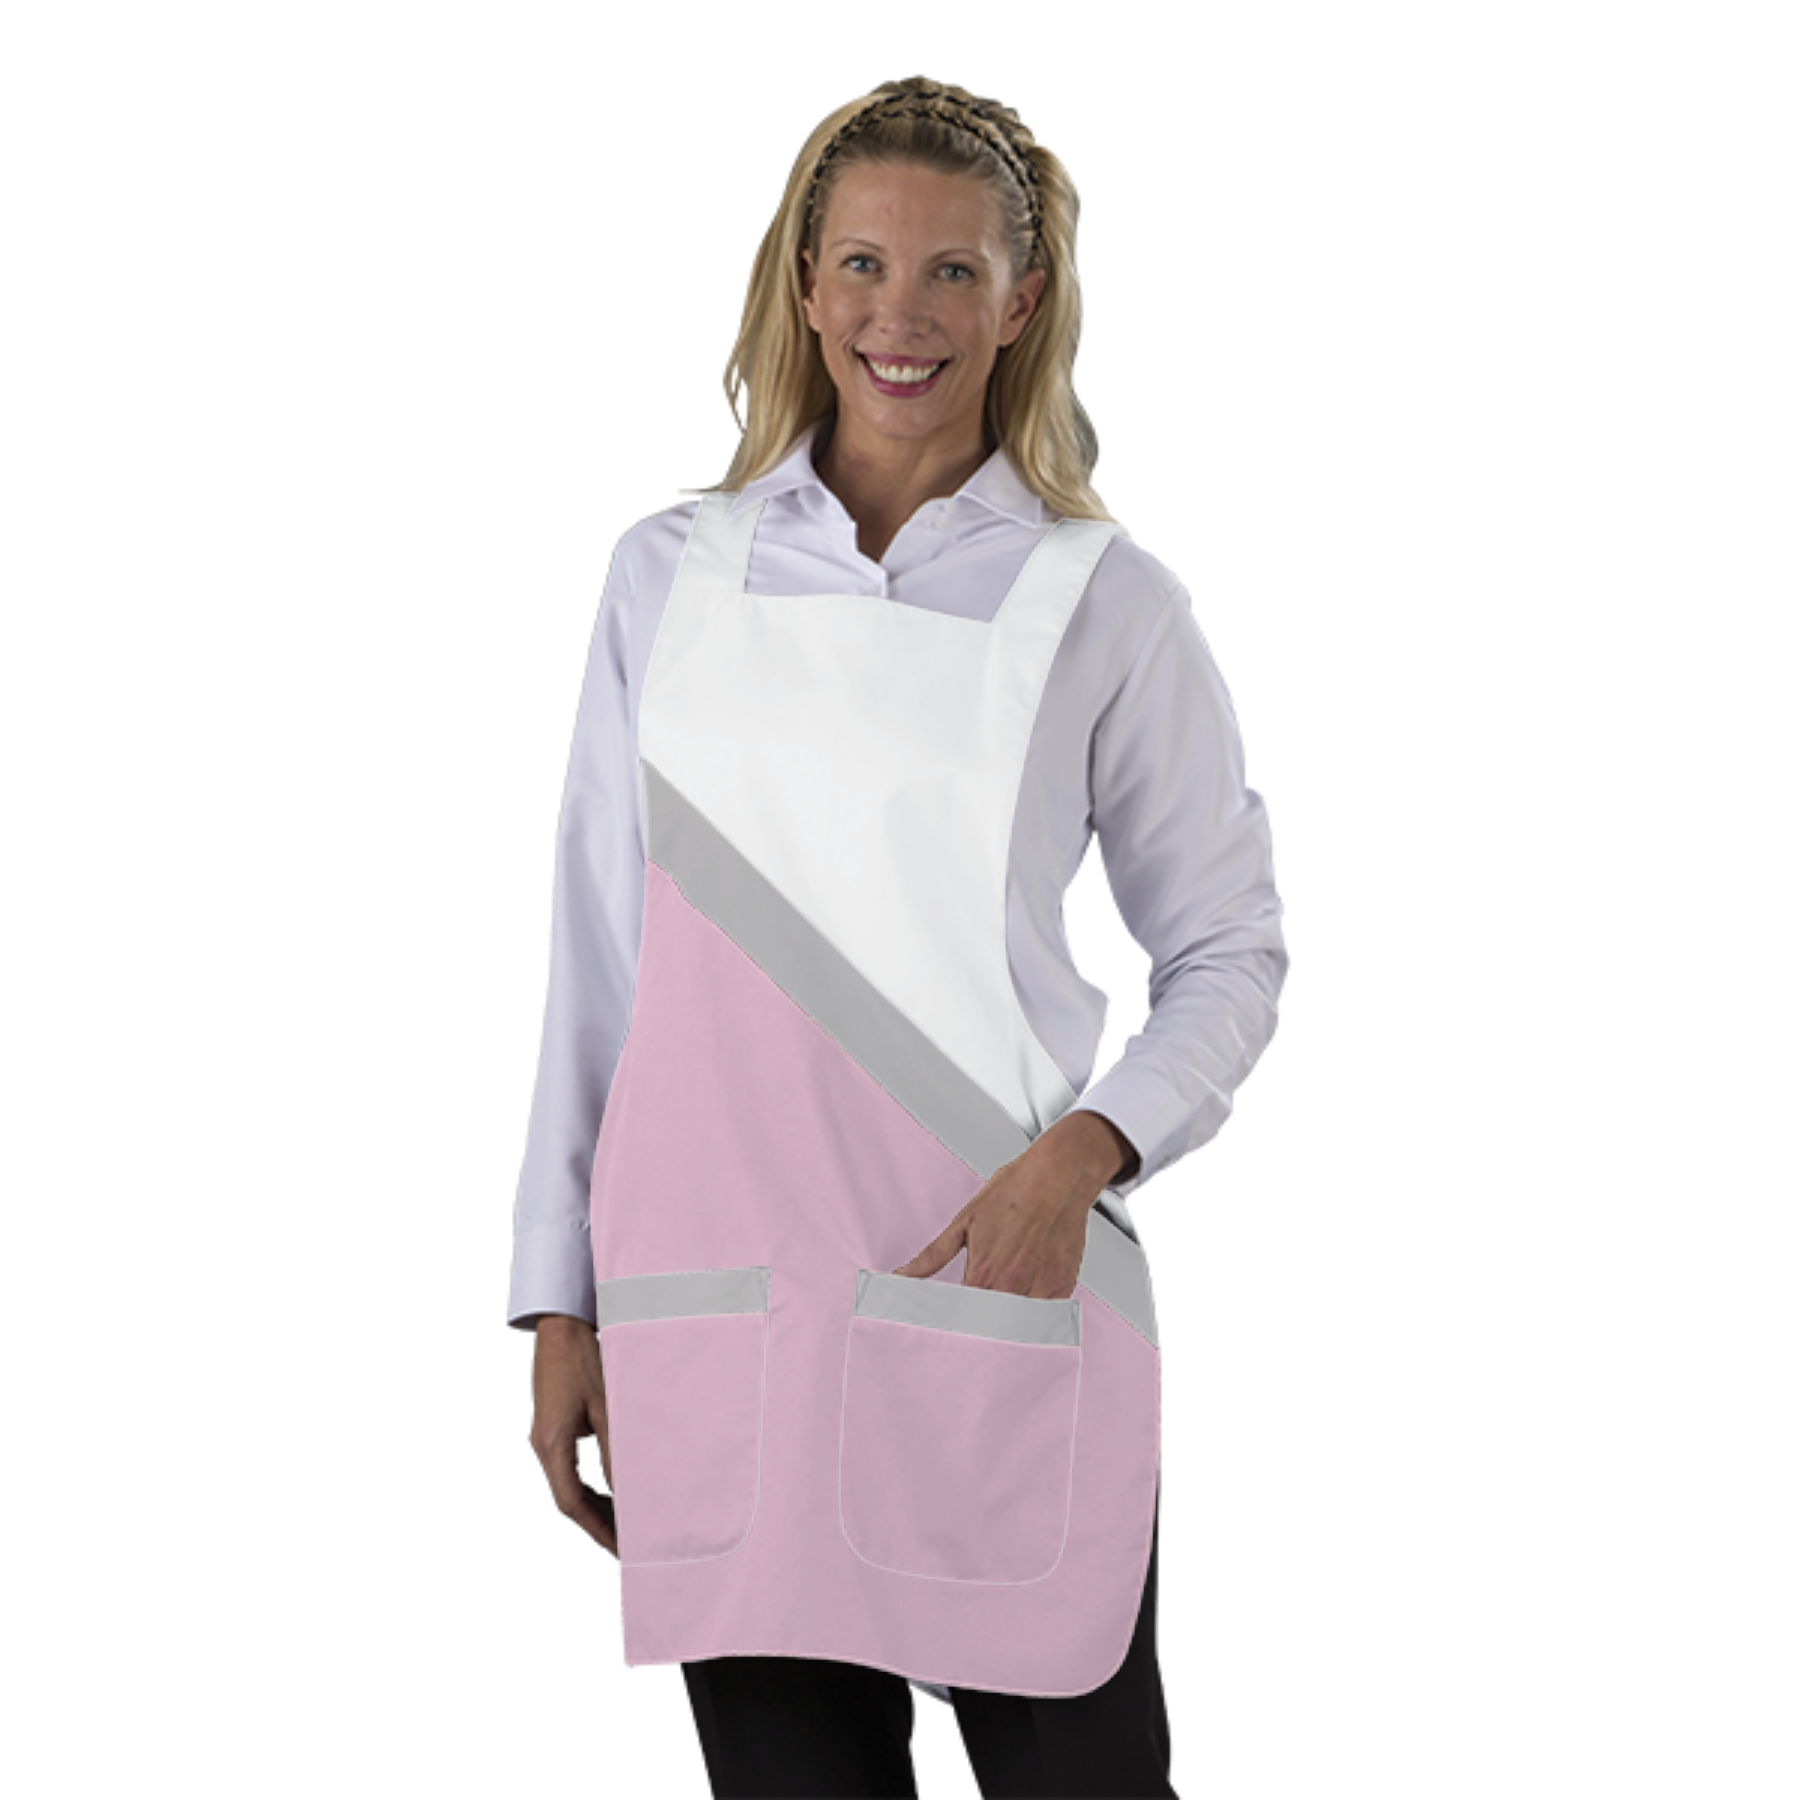 tablier-blouse-chasuble-personnaliser acheté - par Kathleen - le 30-12-2018